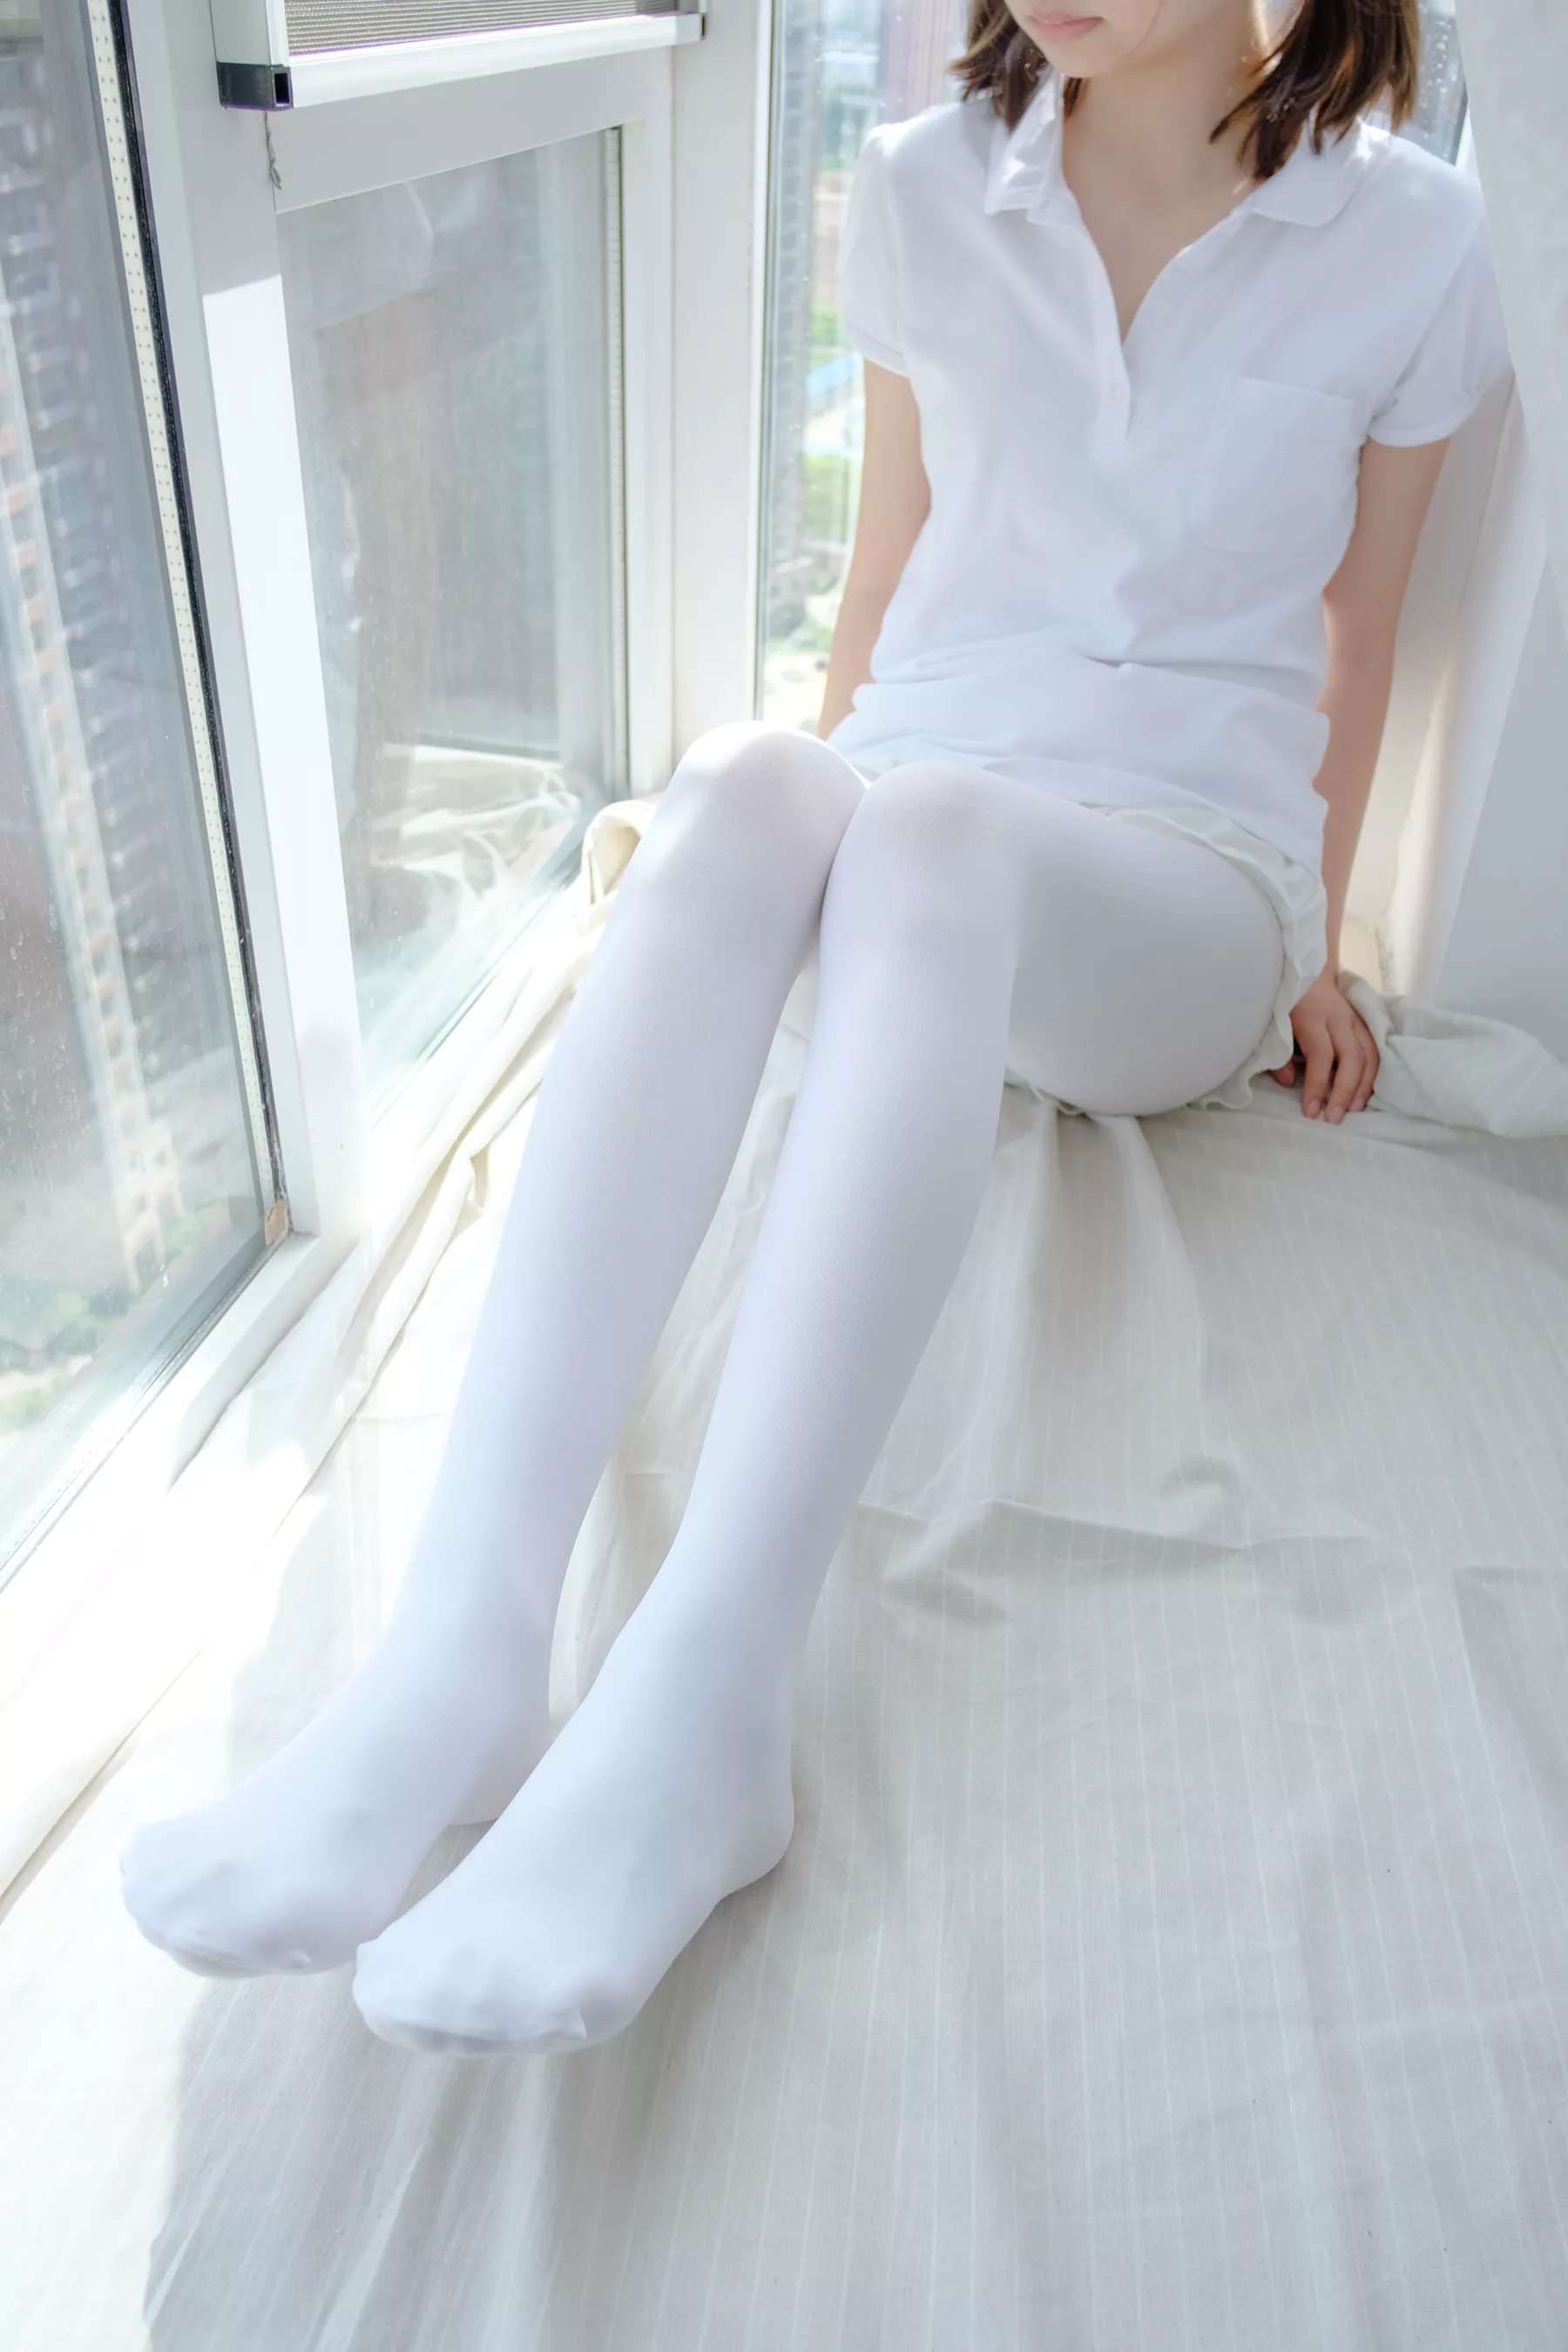 森萝财团写真-[R15-018]窗台上的白丝少女